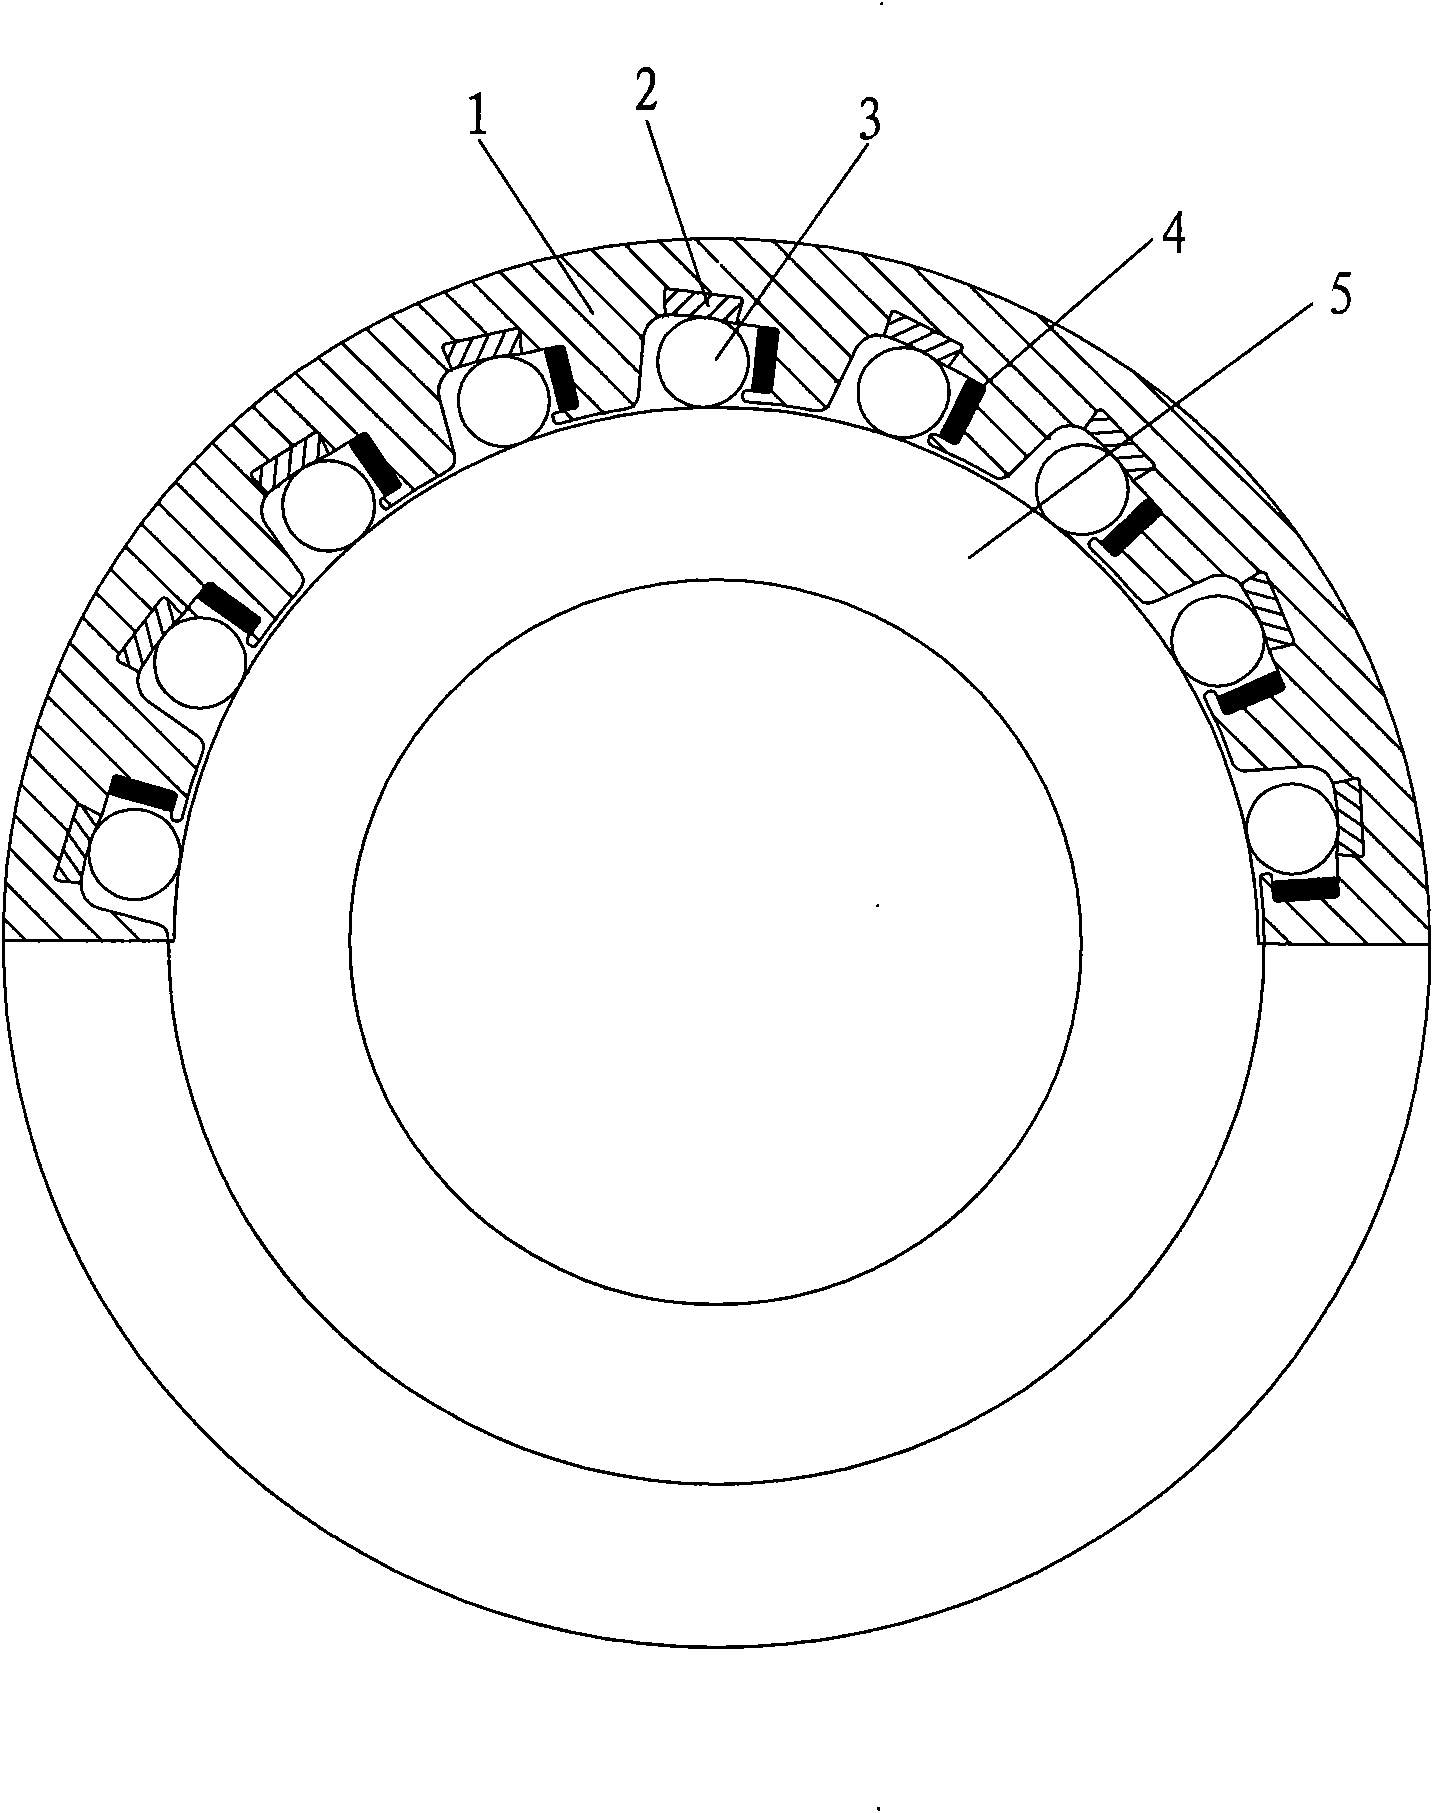 External star wheel type overrunning clutch